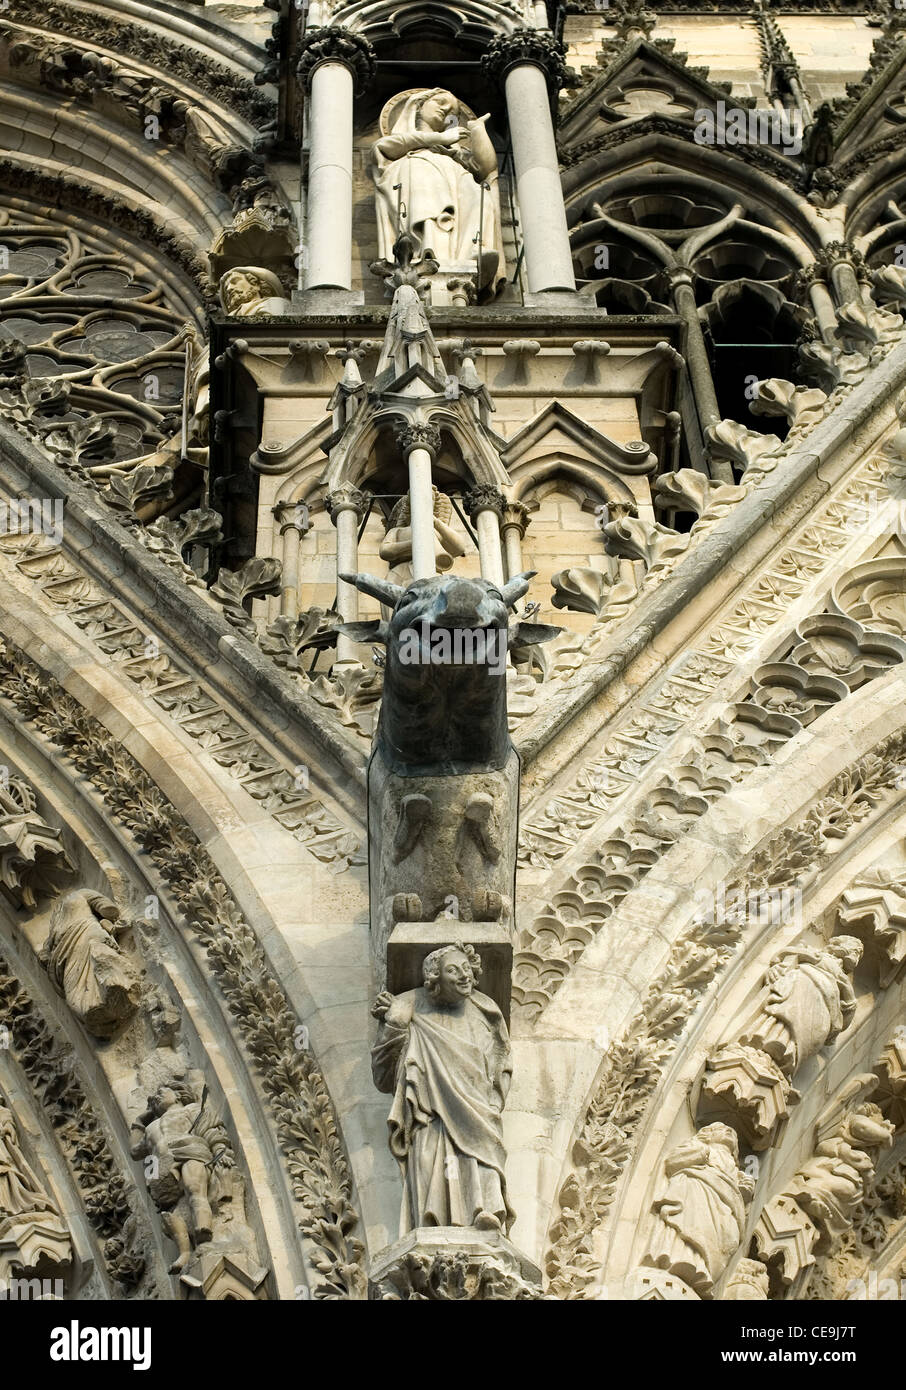 Reich verzierte Steindekorationen und Motive auf der Außenseite der Kathedrale von Reims, Reims, Frankreich Stockfoto